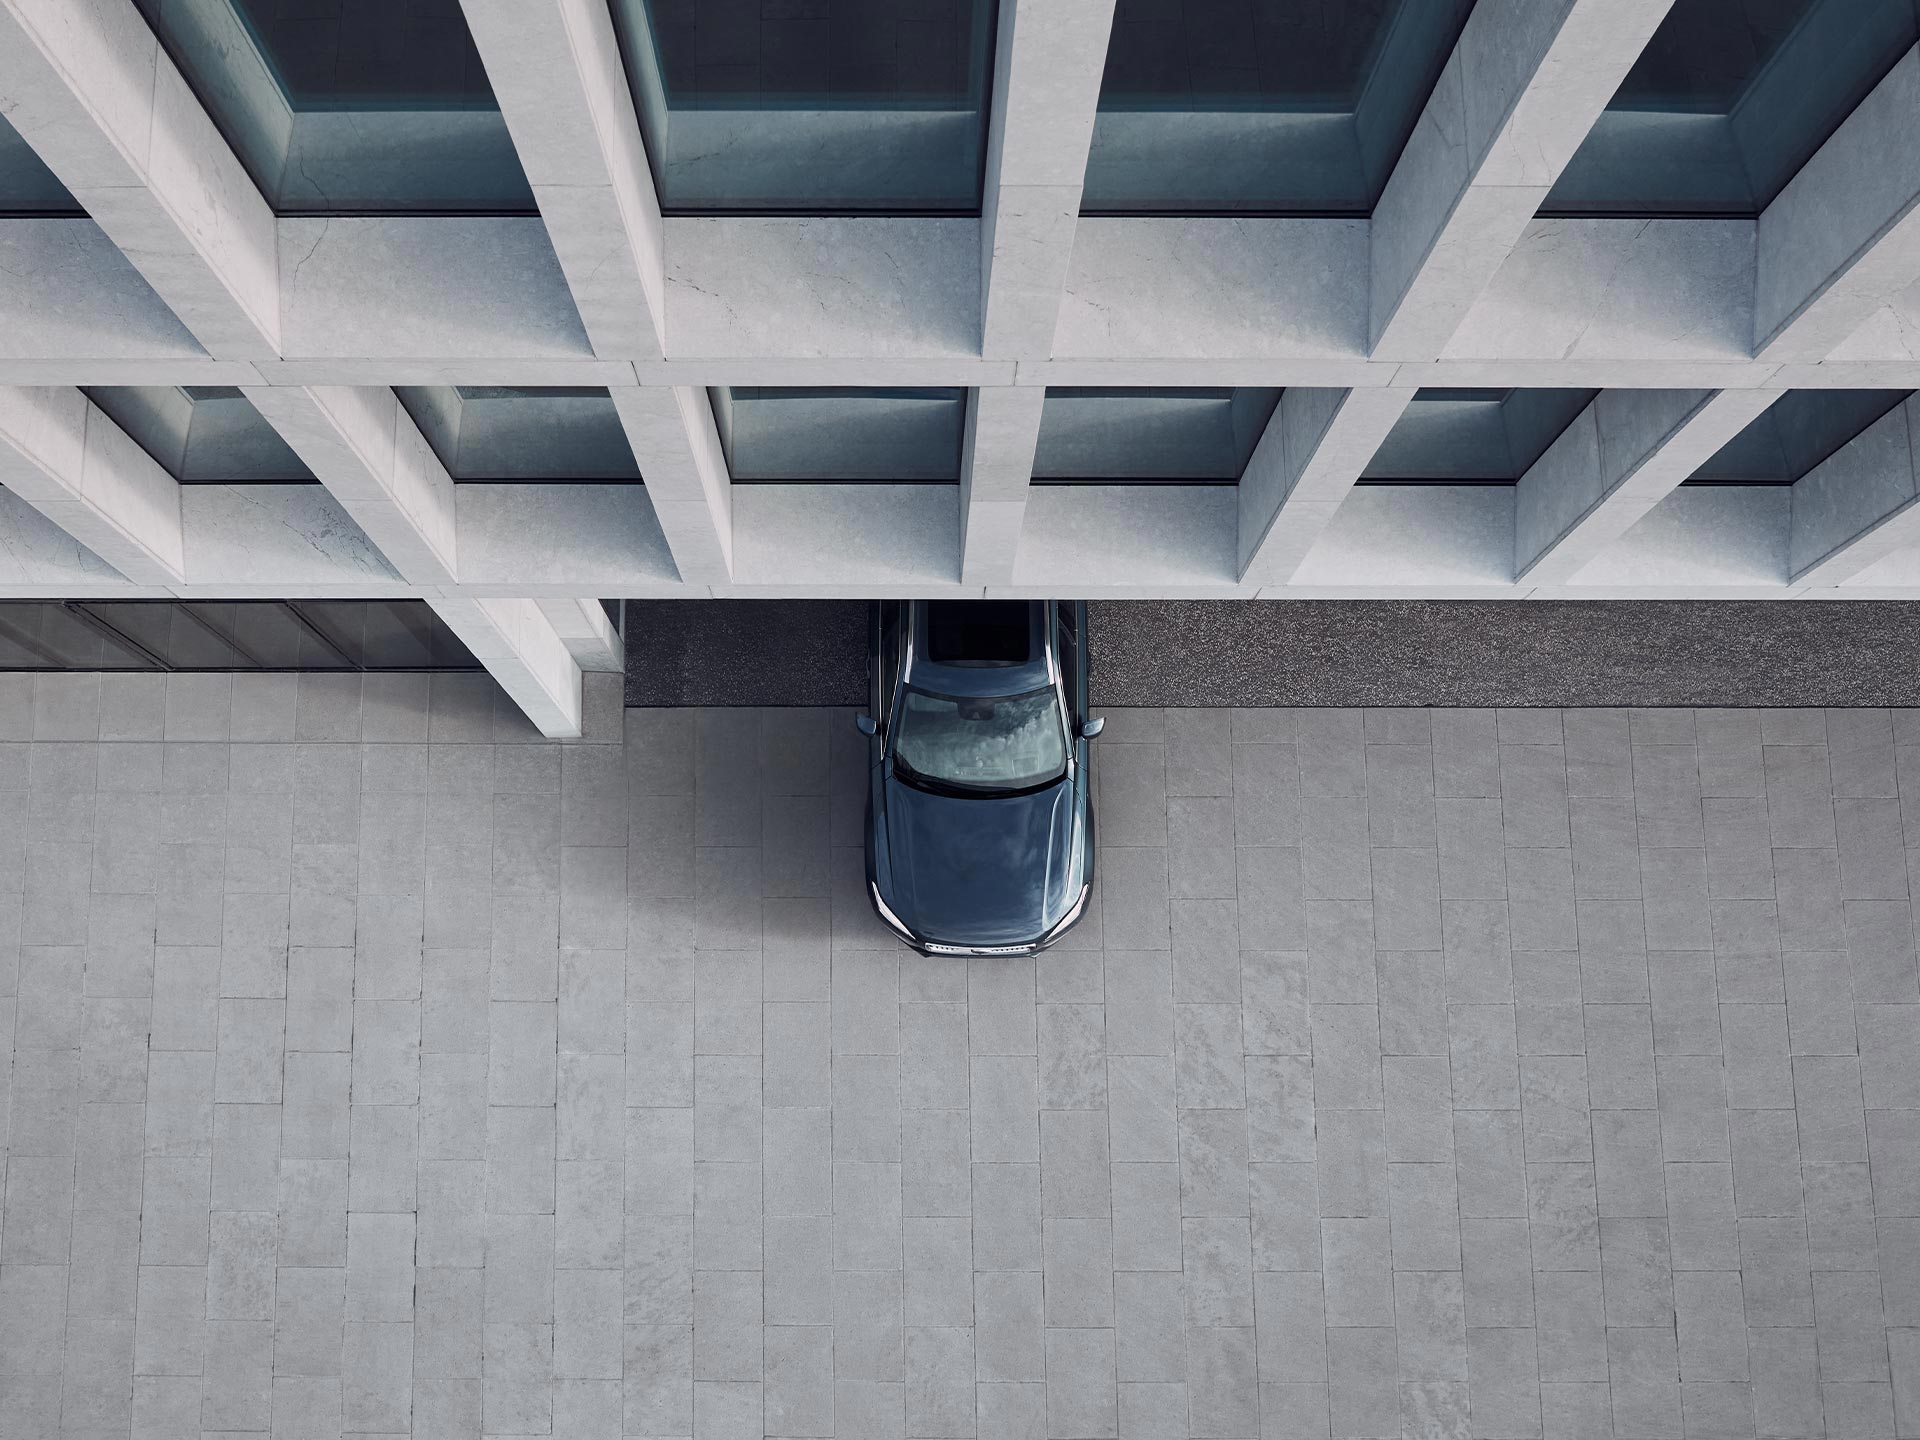 La elegante mitad delantera del SUV Volvo XC90 semihíbrido vista desde arriba.